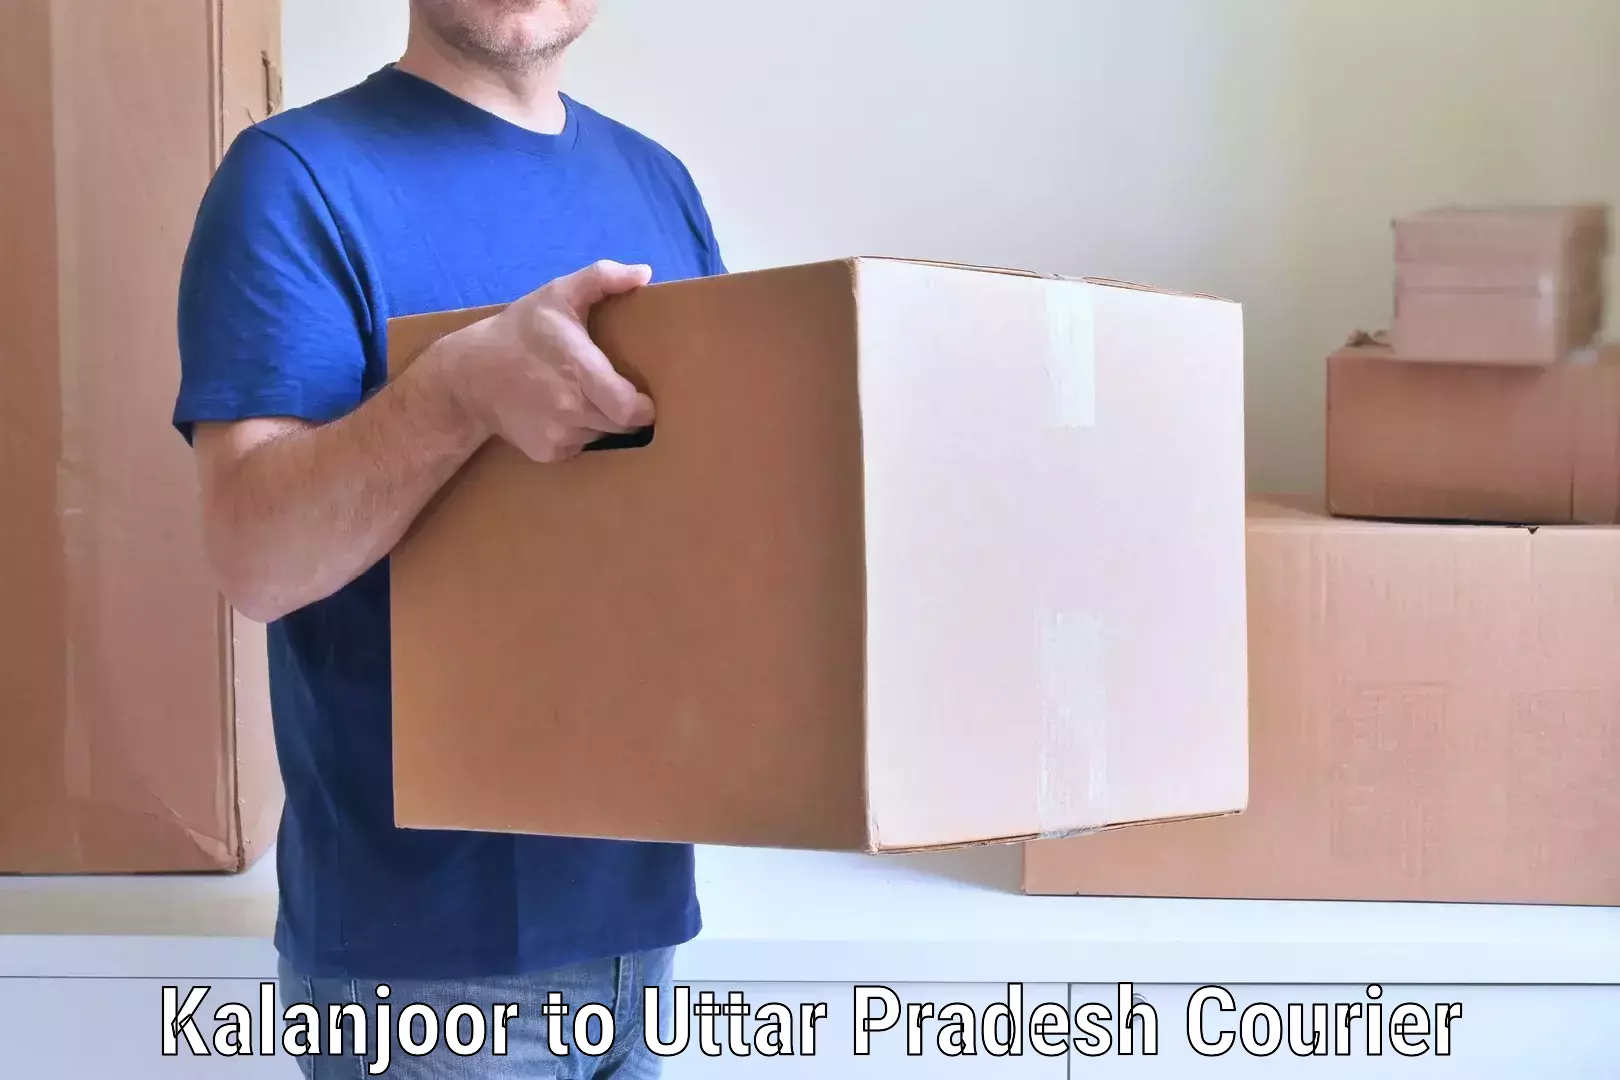 Efficient moving and packing Kalanjoor to Uttar Pradesh